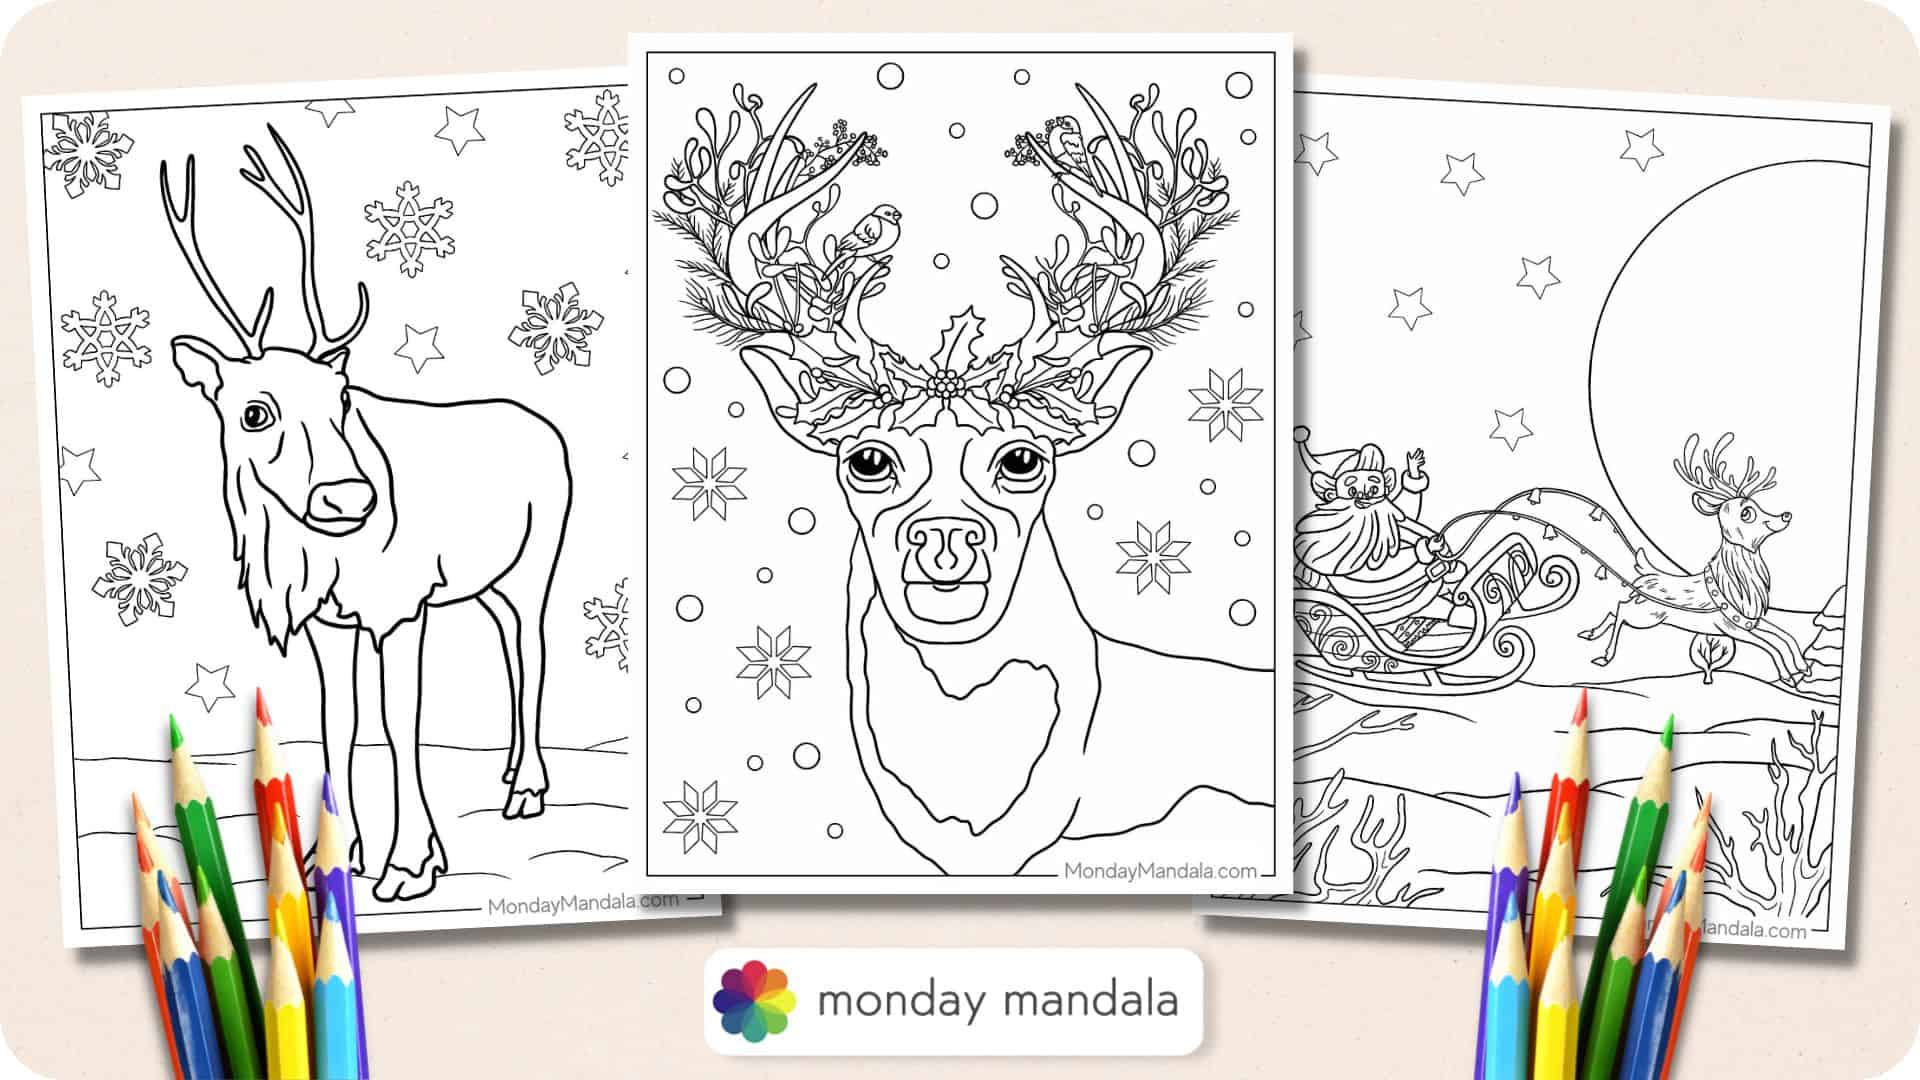 Reindeer coloring pages free pdf printables